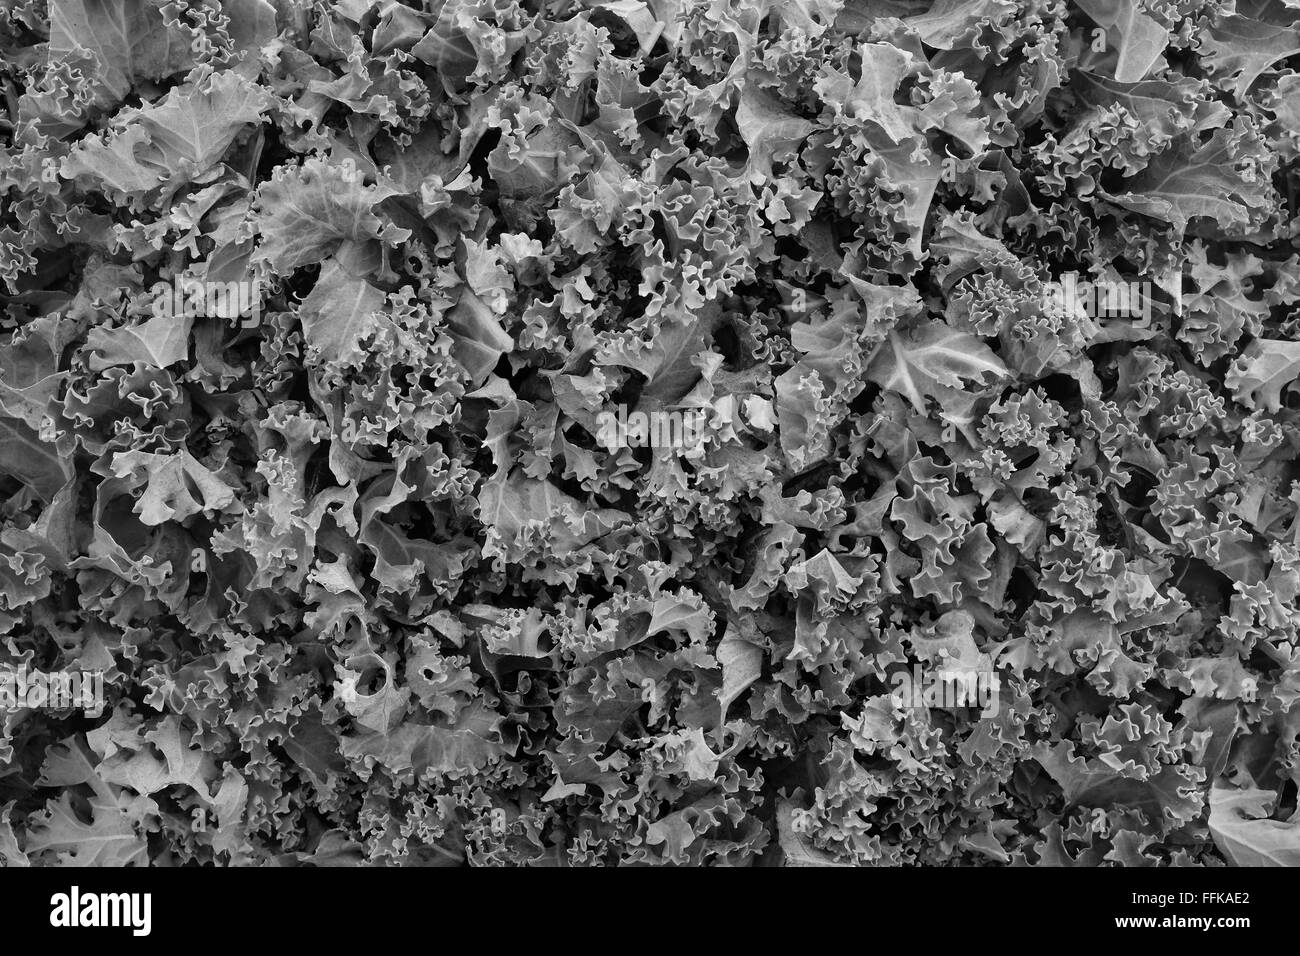 Verarbeitung von gehackten Kohl als eine abstrakte Hintergrundtextur - Monochrom Stockfoto